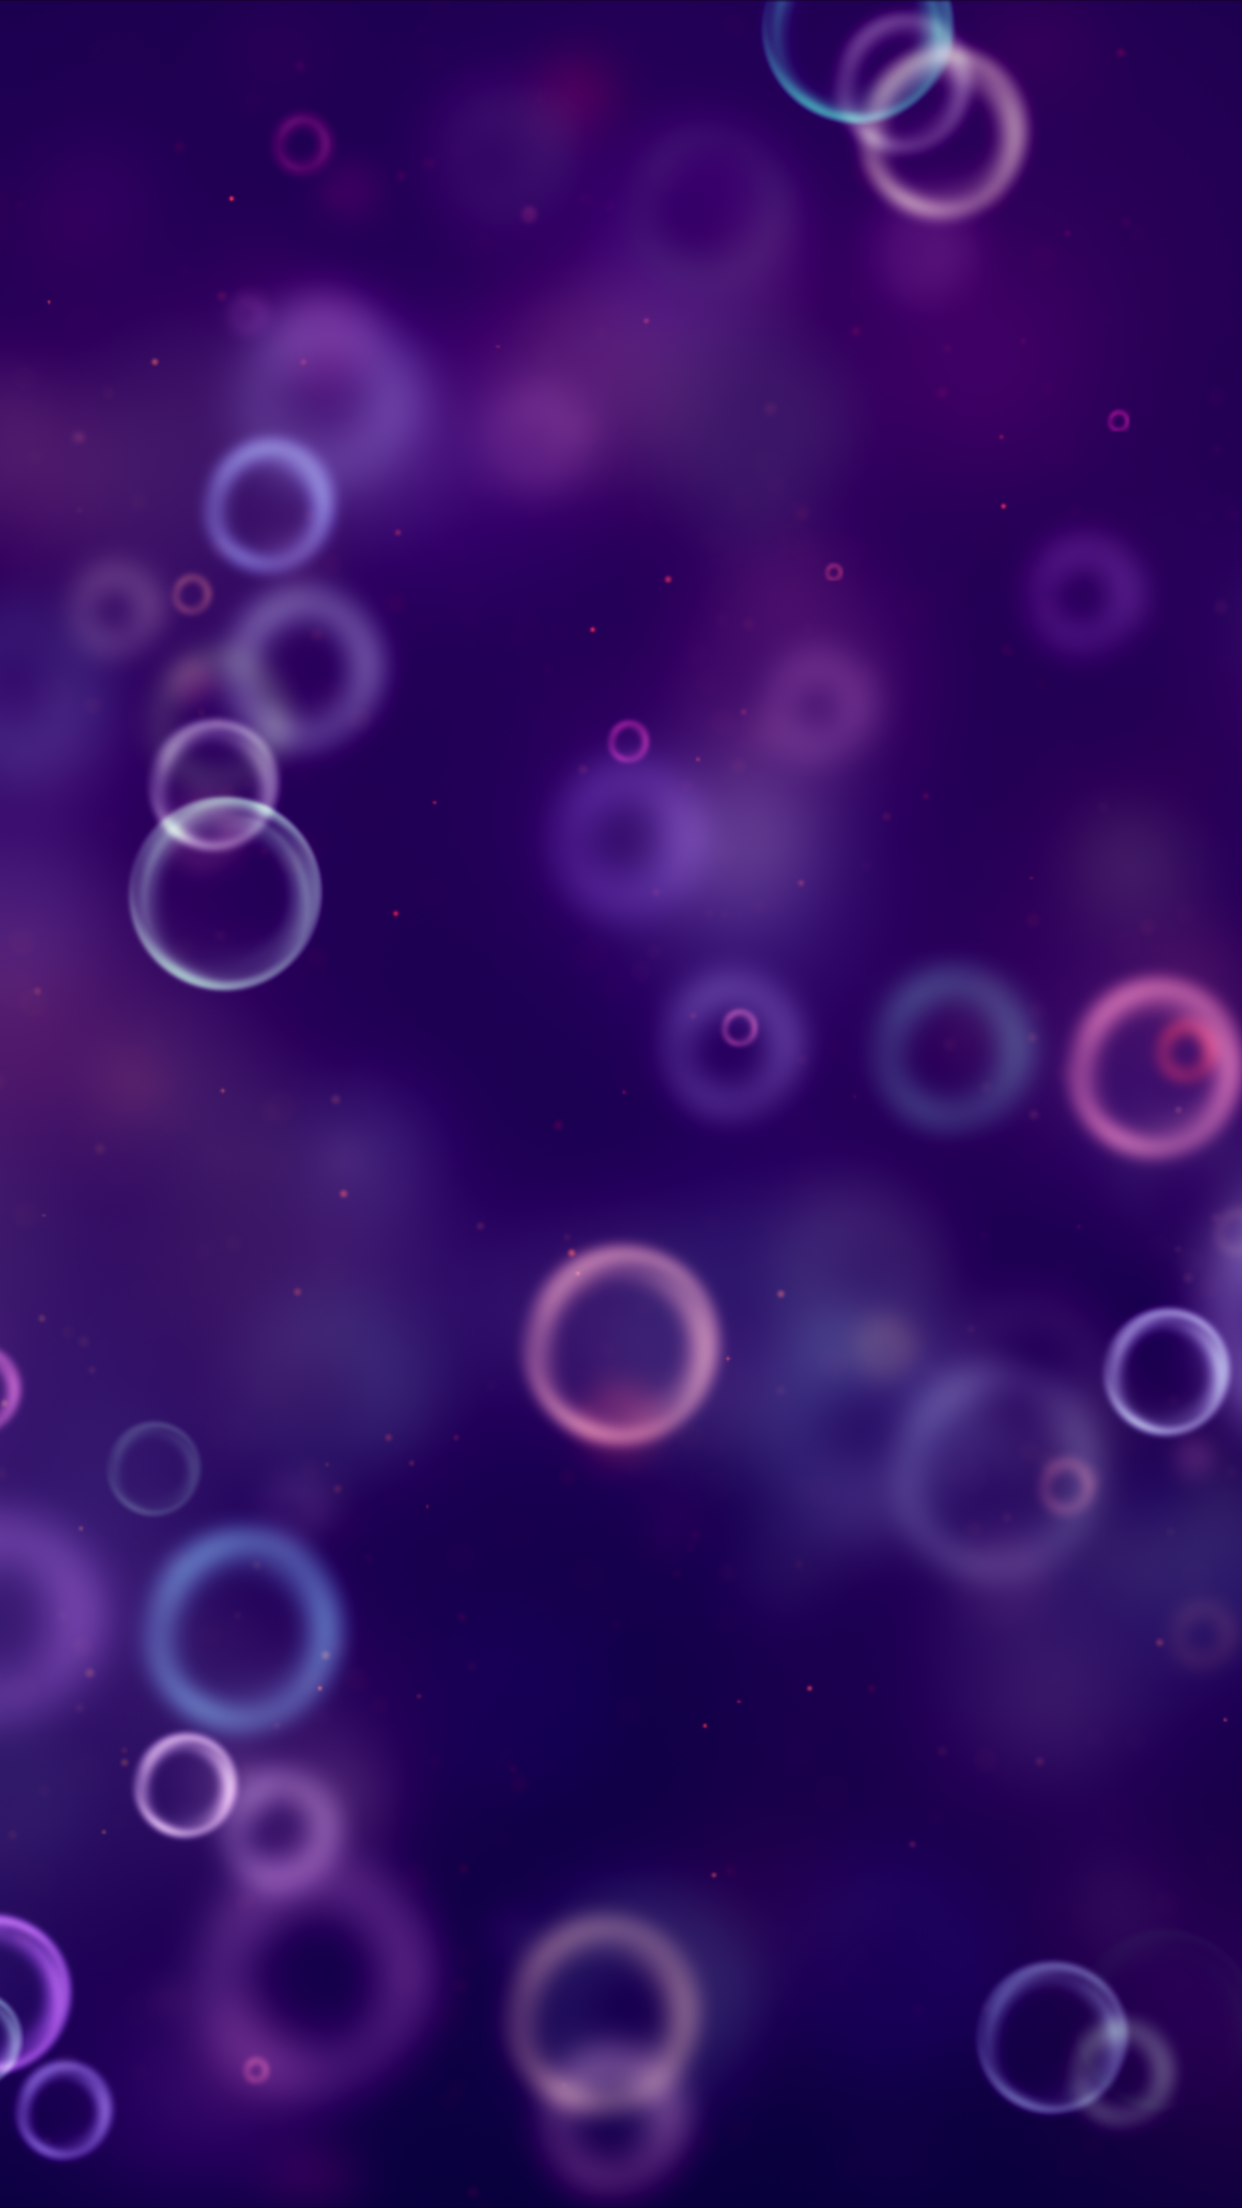 iOS 16 Wallpaper Blur làm cho hình nền của bạn trở nên độc đáo hơn bao giờ hết. Với hiệu ứng mờ đẹp mắt, bạn sẽ được tận hưởng không gian ảo diệu giữa những hạt sáng lung linh. Hãy ghé thăm hình ảnh liên quan để xem những bức ảnh tuyệt vời nhất với iOS 